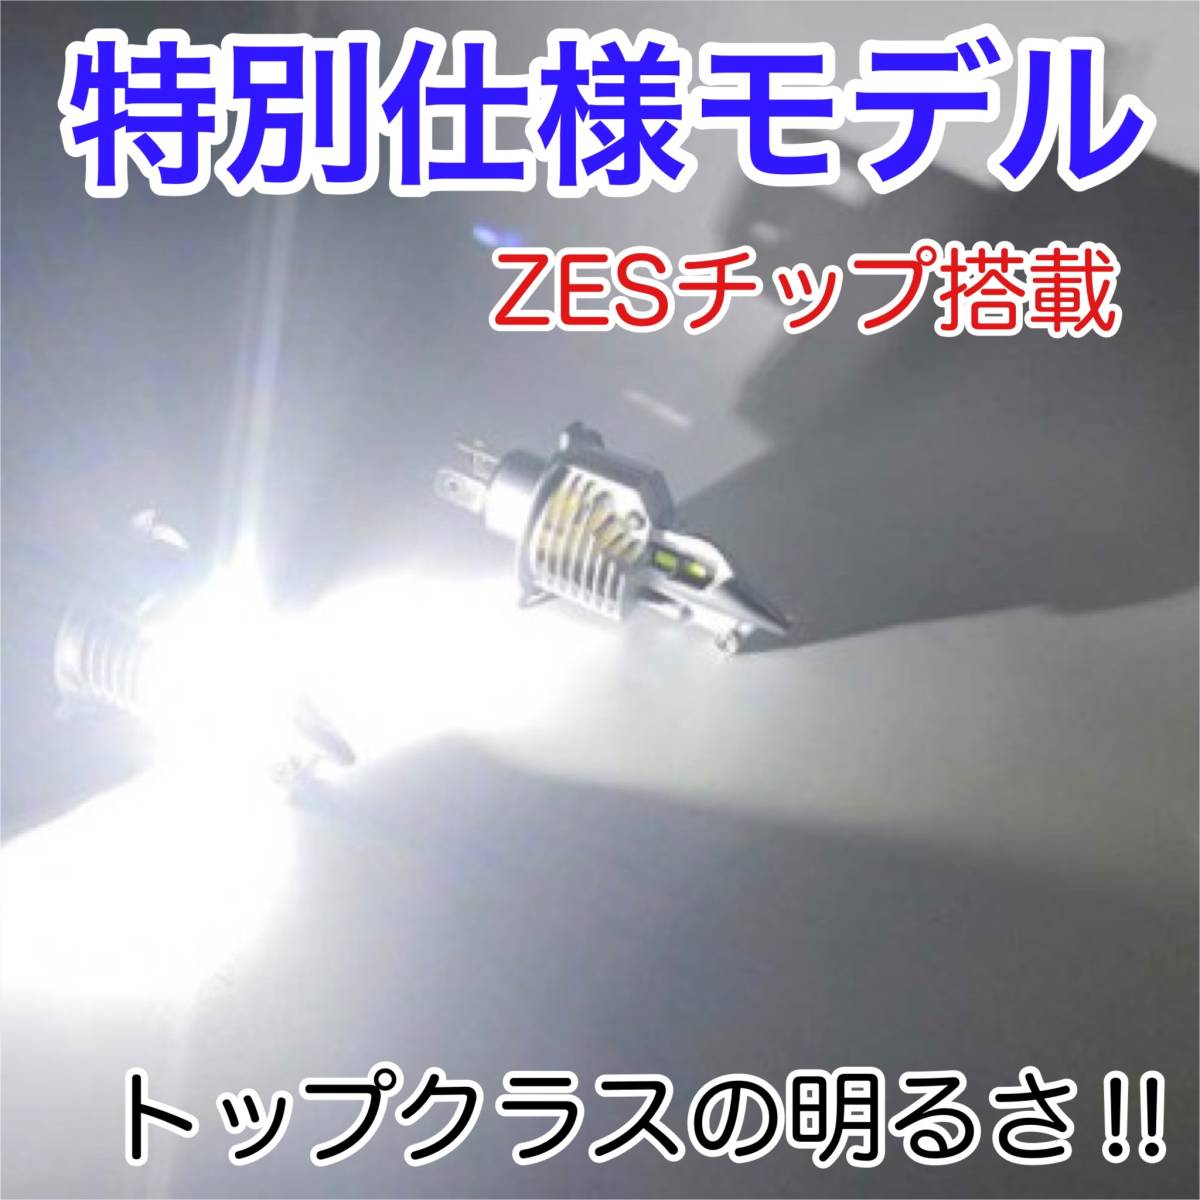 KAWASAKI カワサキ ゼファー X 1996-2009 ZR400C LEDヘッドライト H4 Hi/Lo バルブ バイク用 1灯 S25 テールランプ2個 ホワイト 交換用